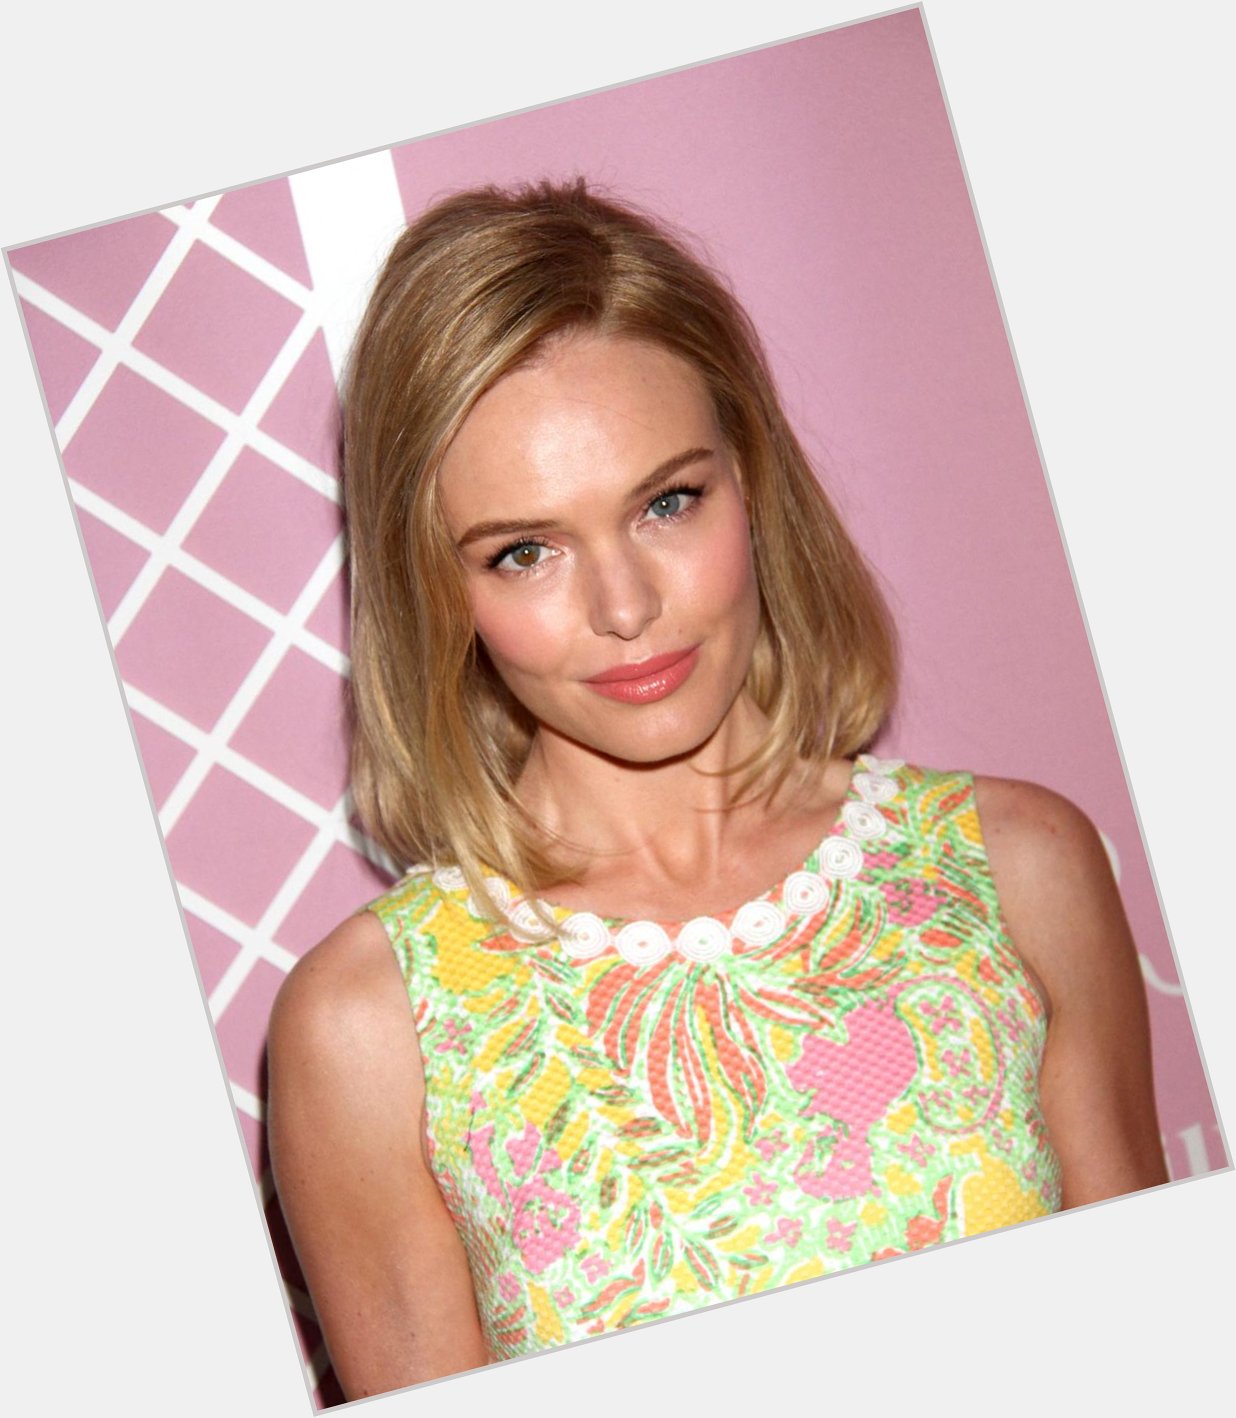 Happy Birthday dear Kate Bosworth! 